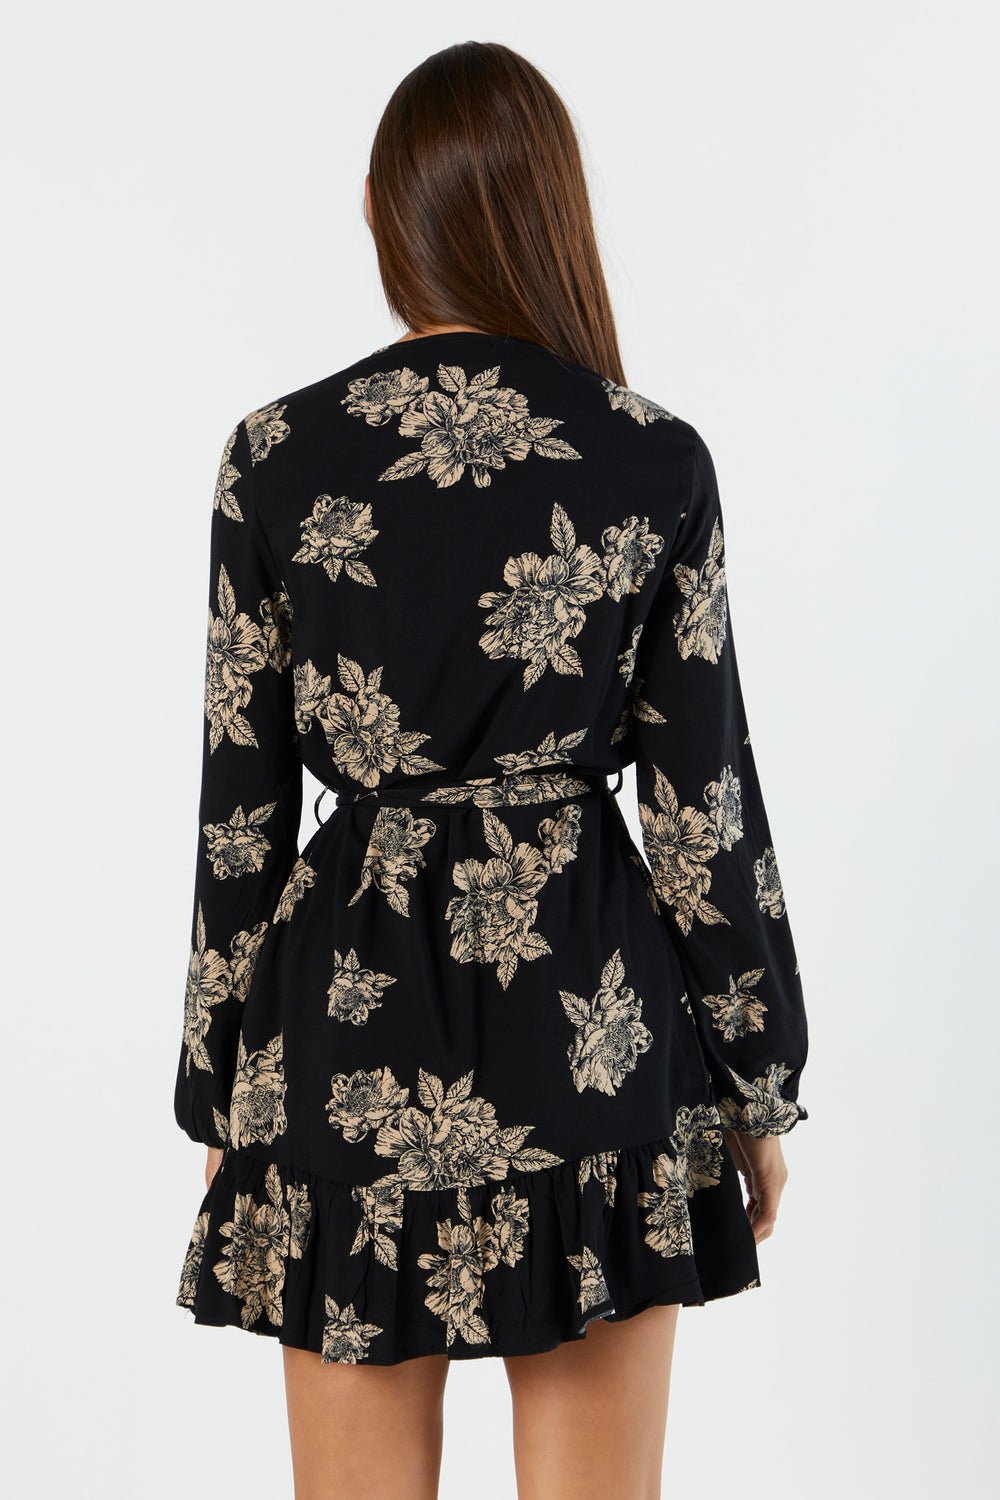 Black Floral Print Belted Long Sleeve Dress Black 2